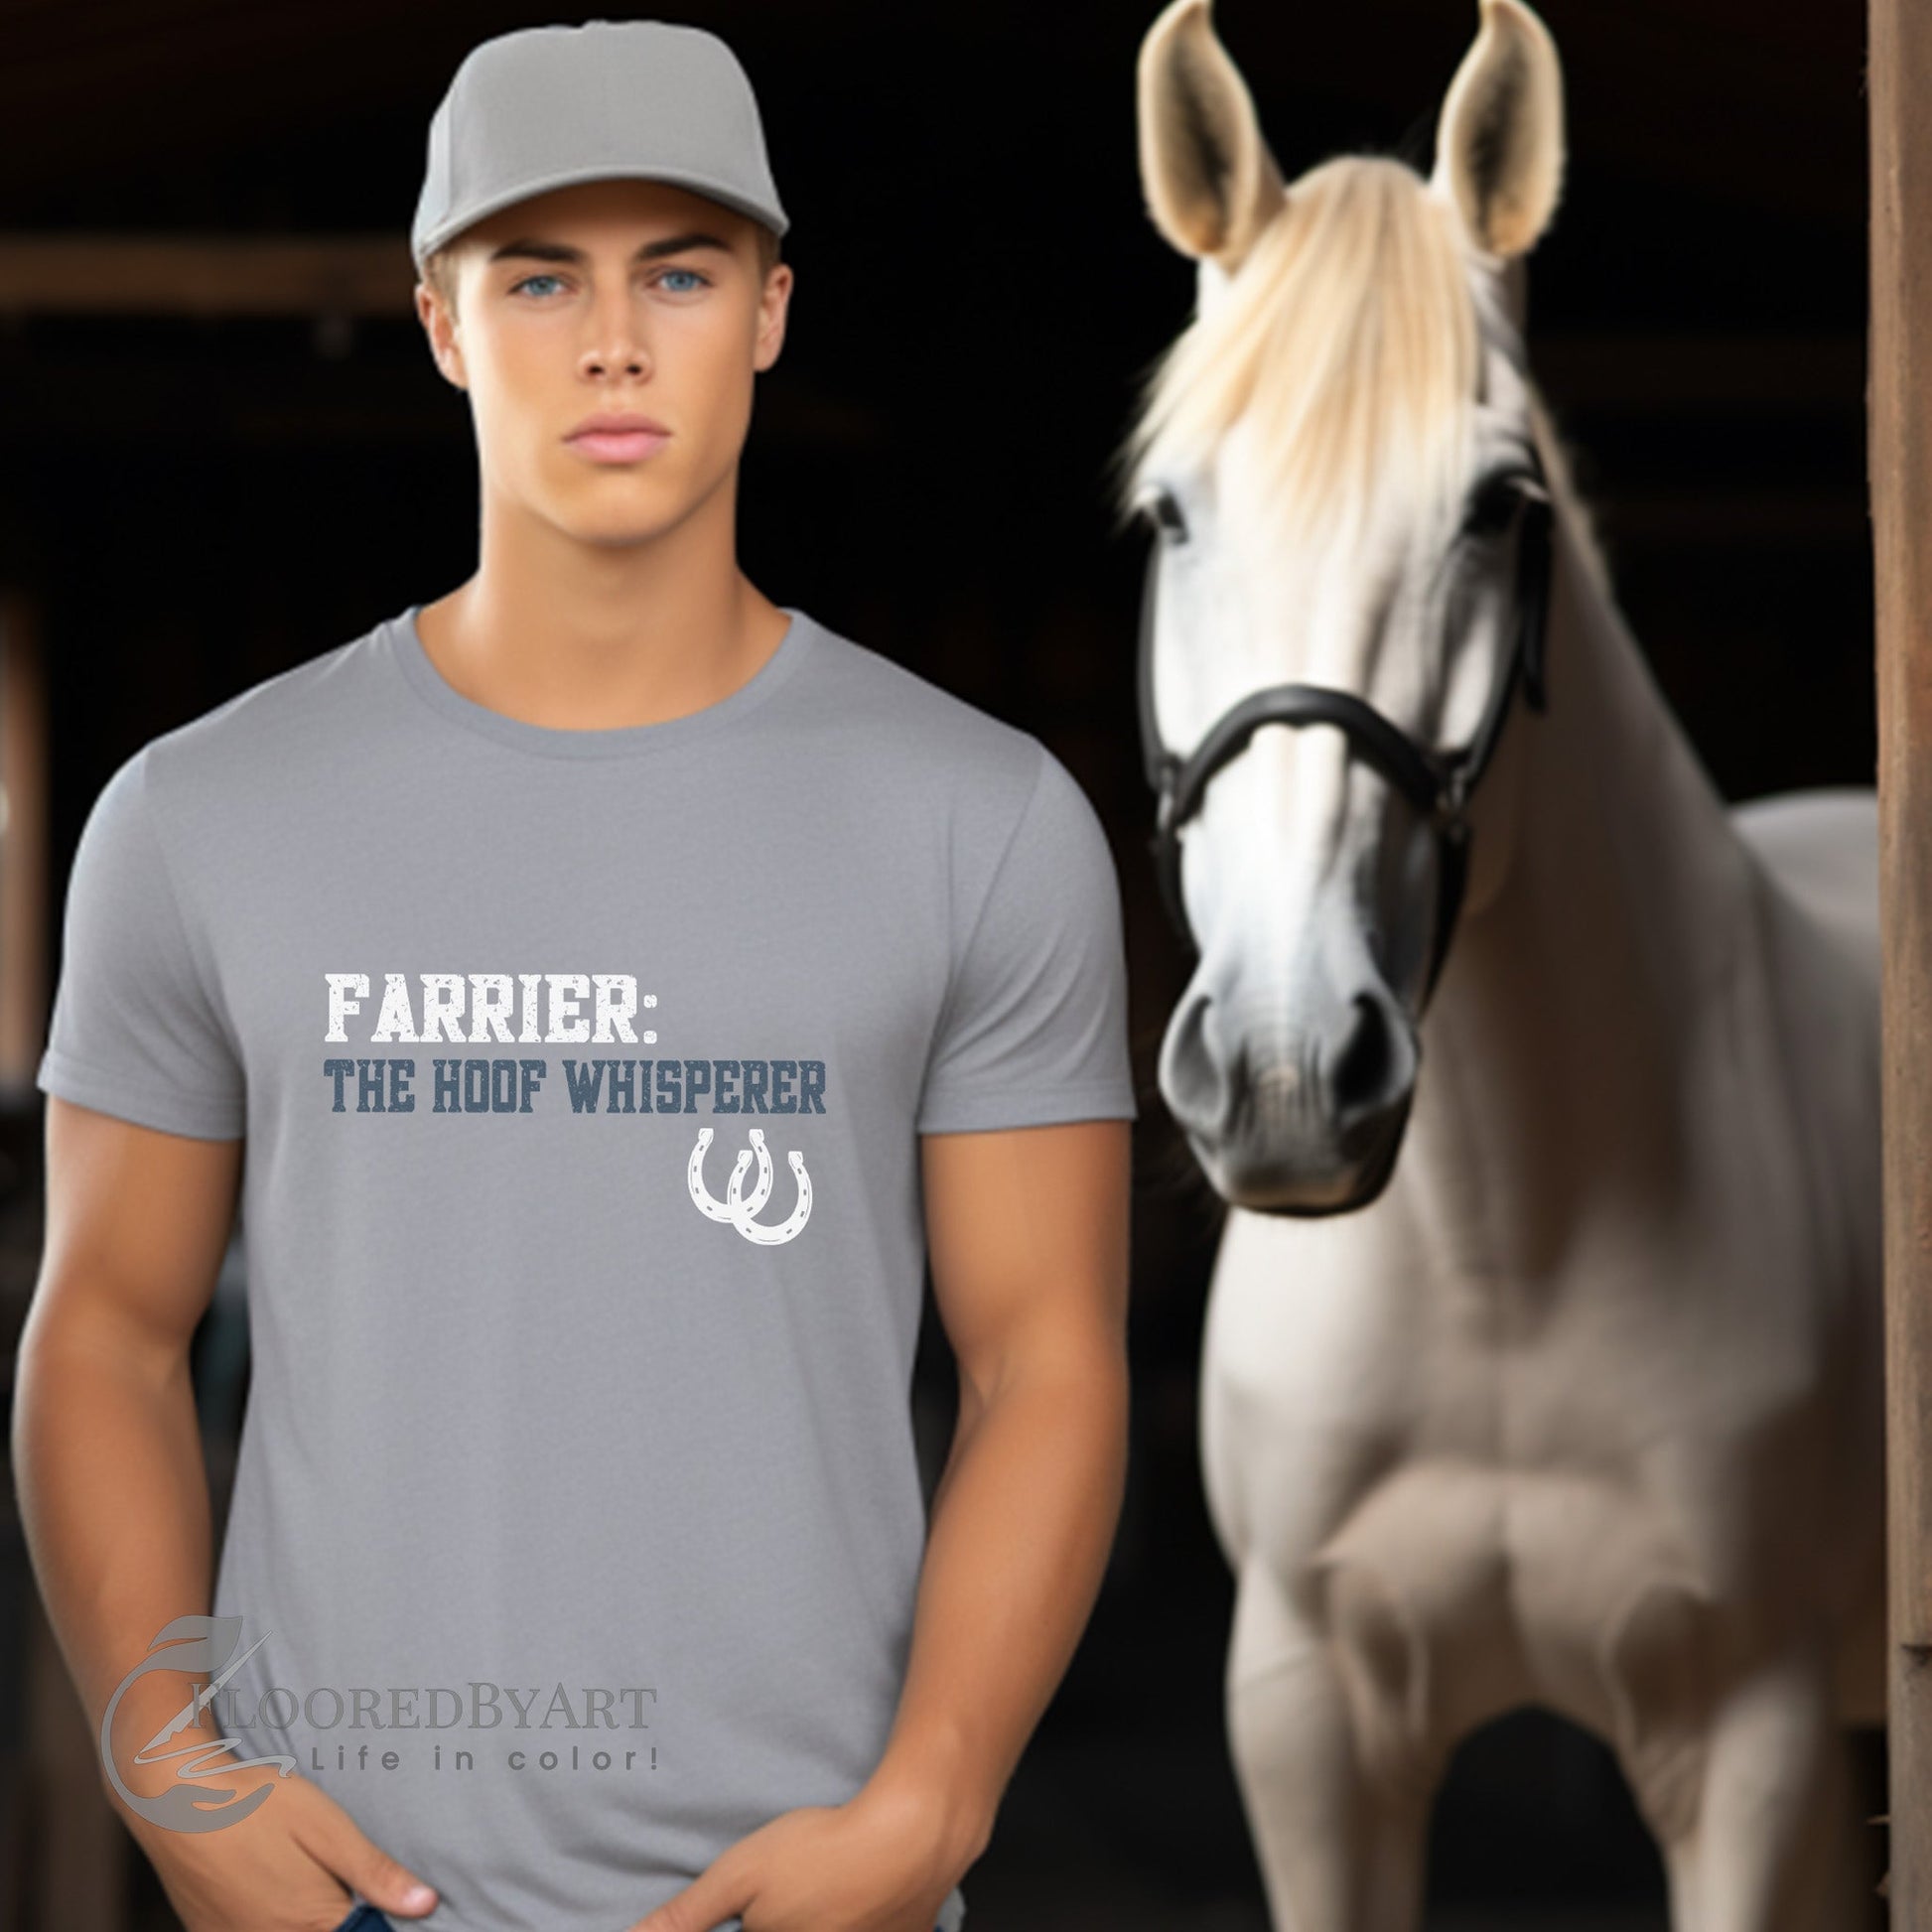 Farrier Longsleeve T-shirt, The Hoof Whisperer, Horseshoer Tee, Professional Farrier Shirt - FlooredByArt